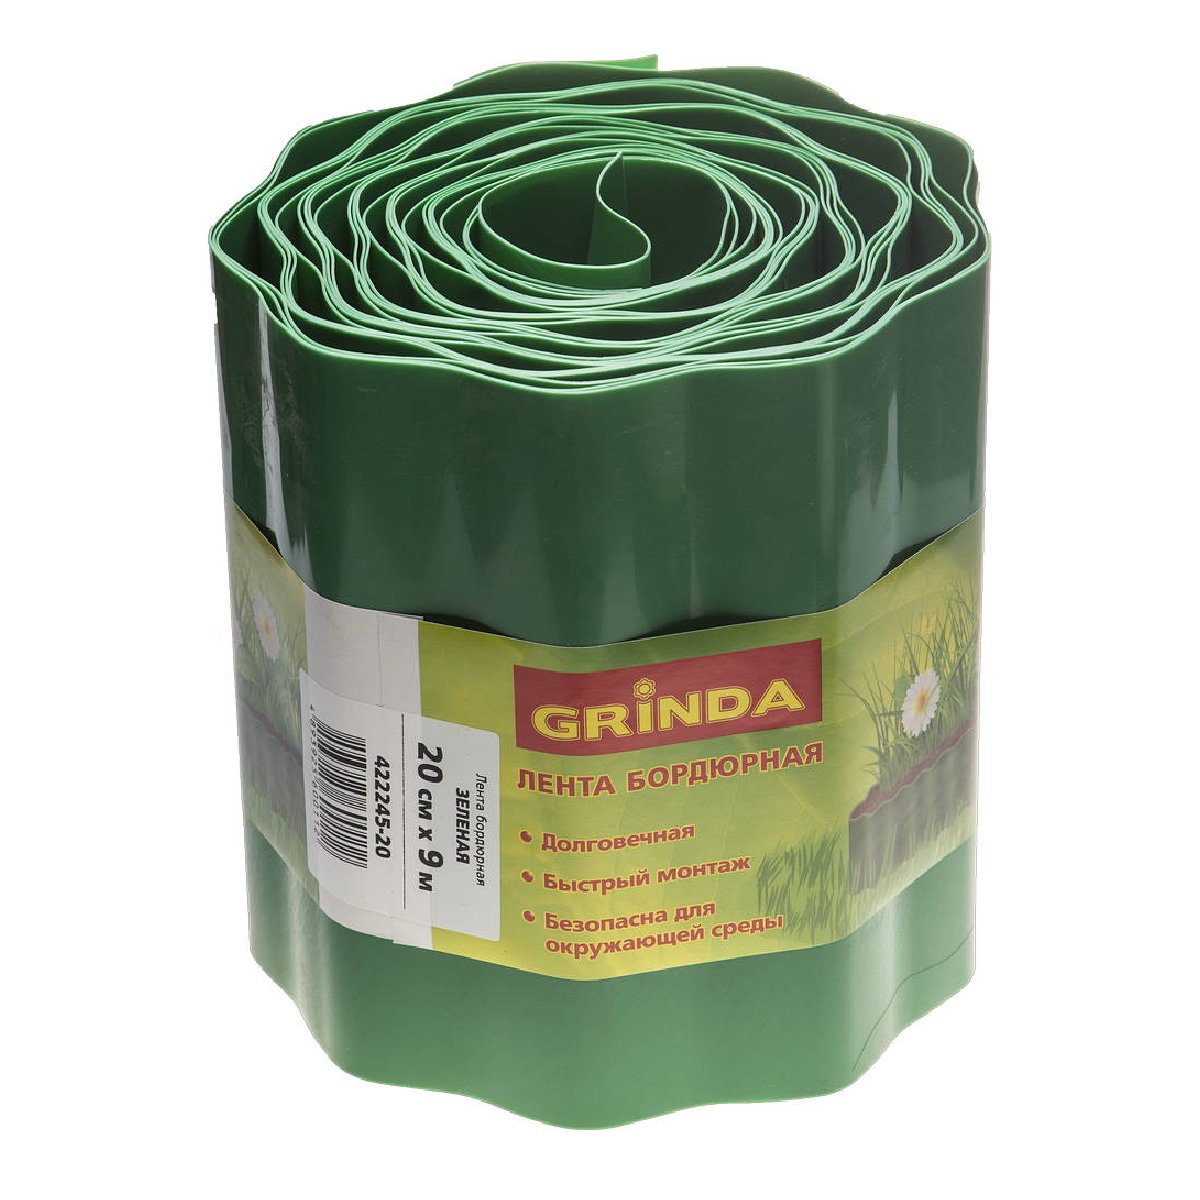 Бордюрная лента GRINDA 20 см х 9 м, зеленая (422245-20)